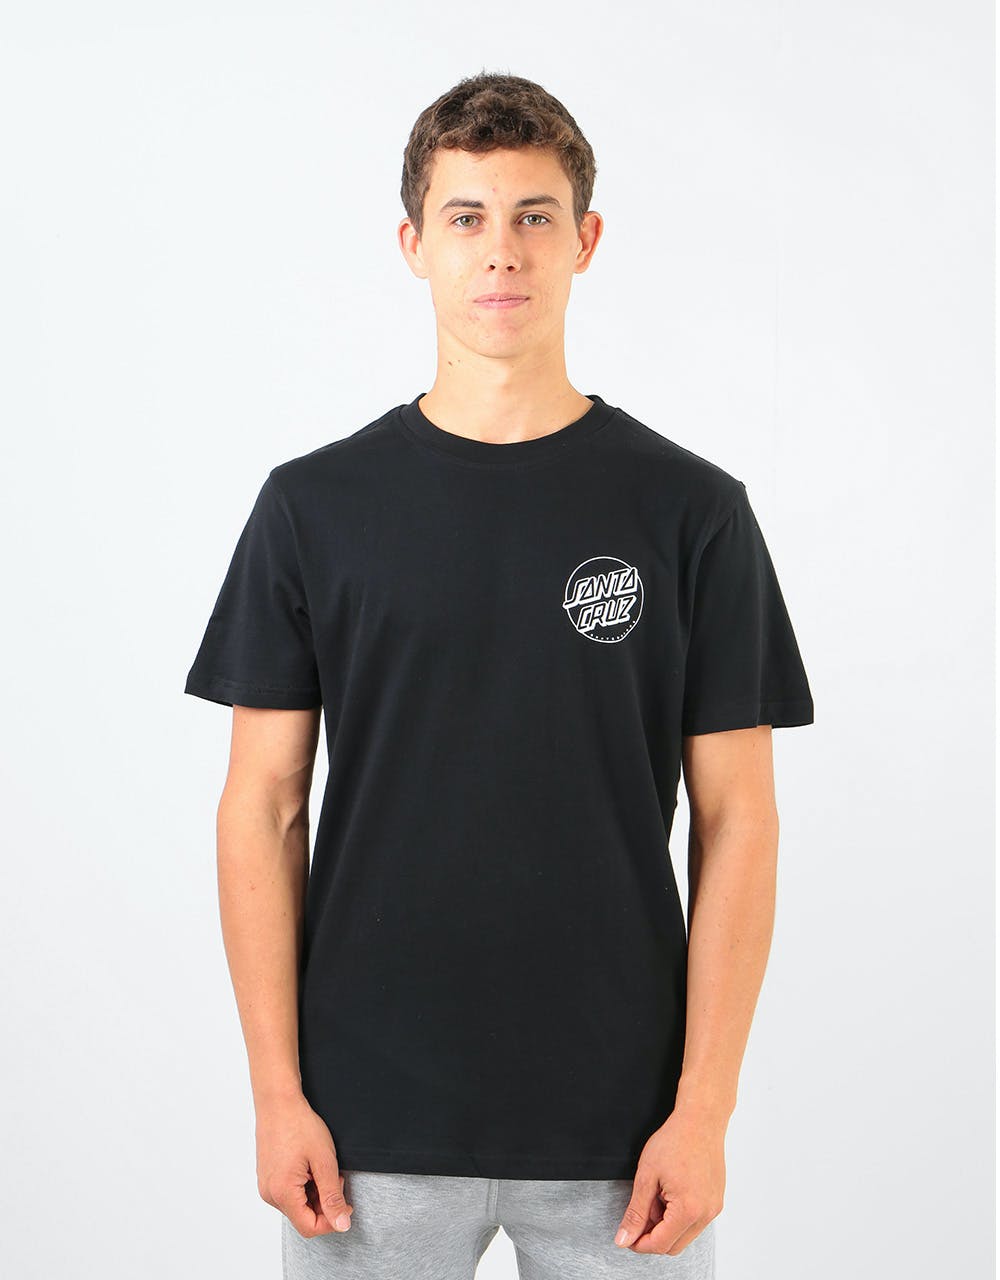 Santa Cruz Rob Face 2 T-Shirt - Black